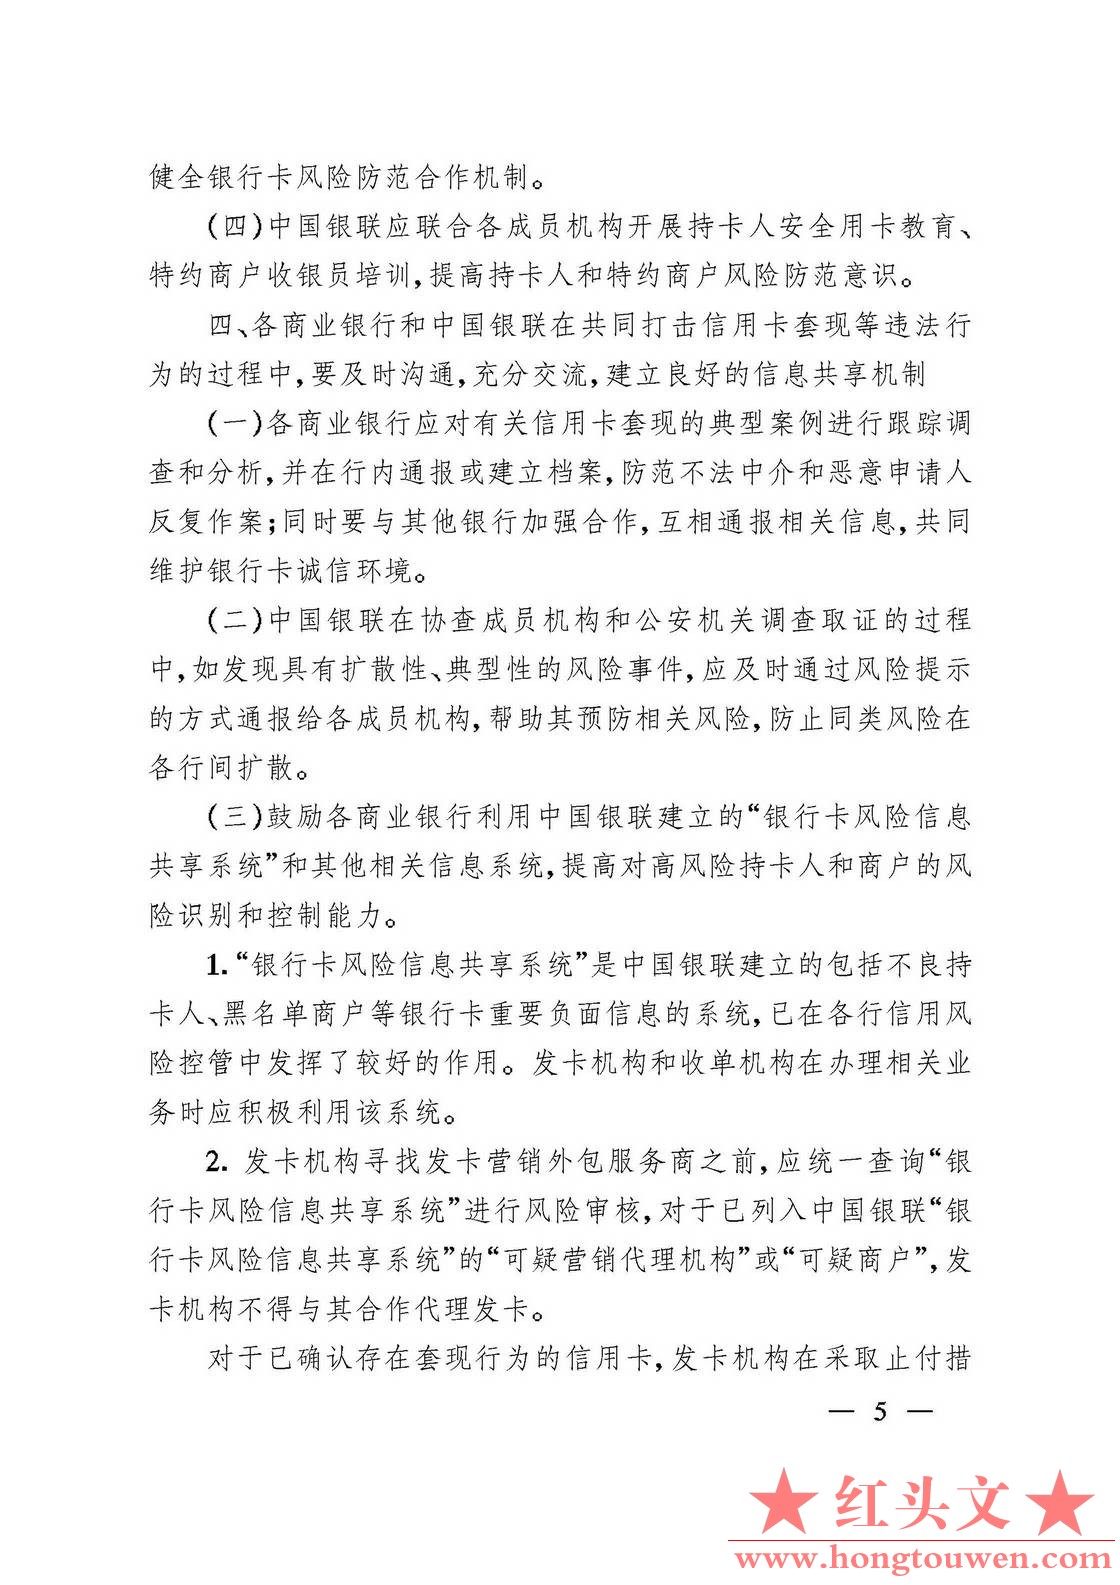 银发[2006]84号-中国人民银行 中国银行业监督管理委员会关于防范信用卡风险有关问题的.jpg